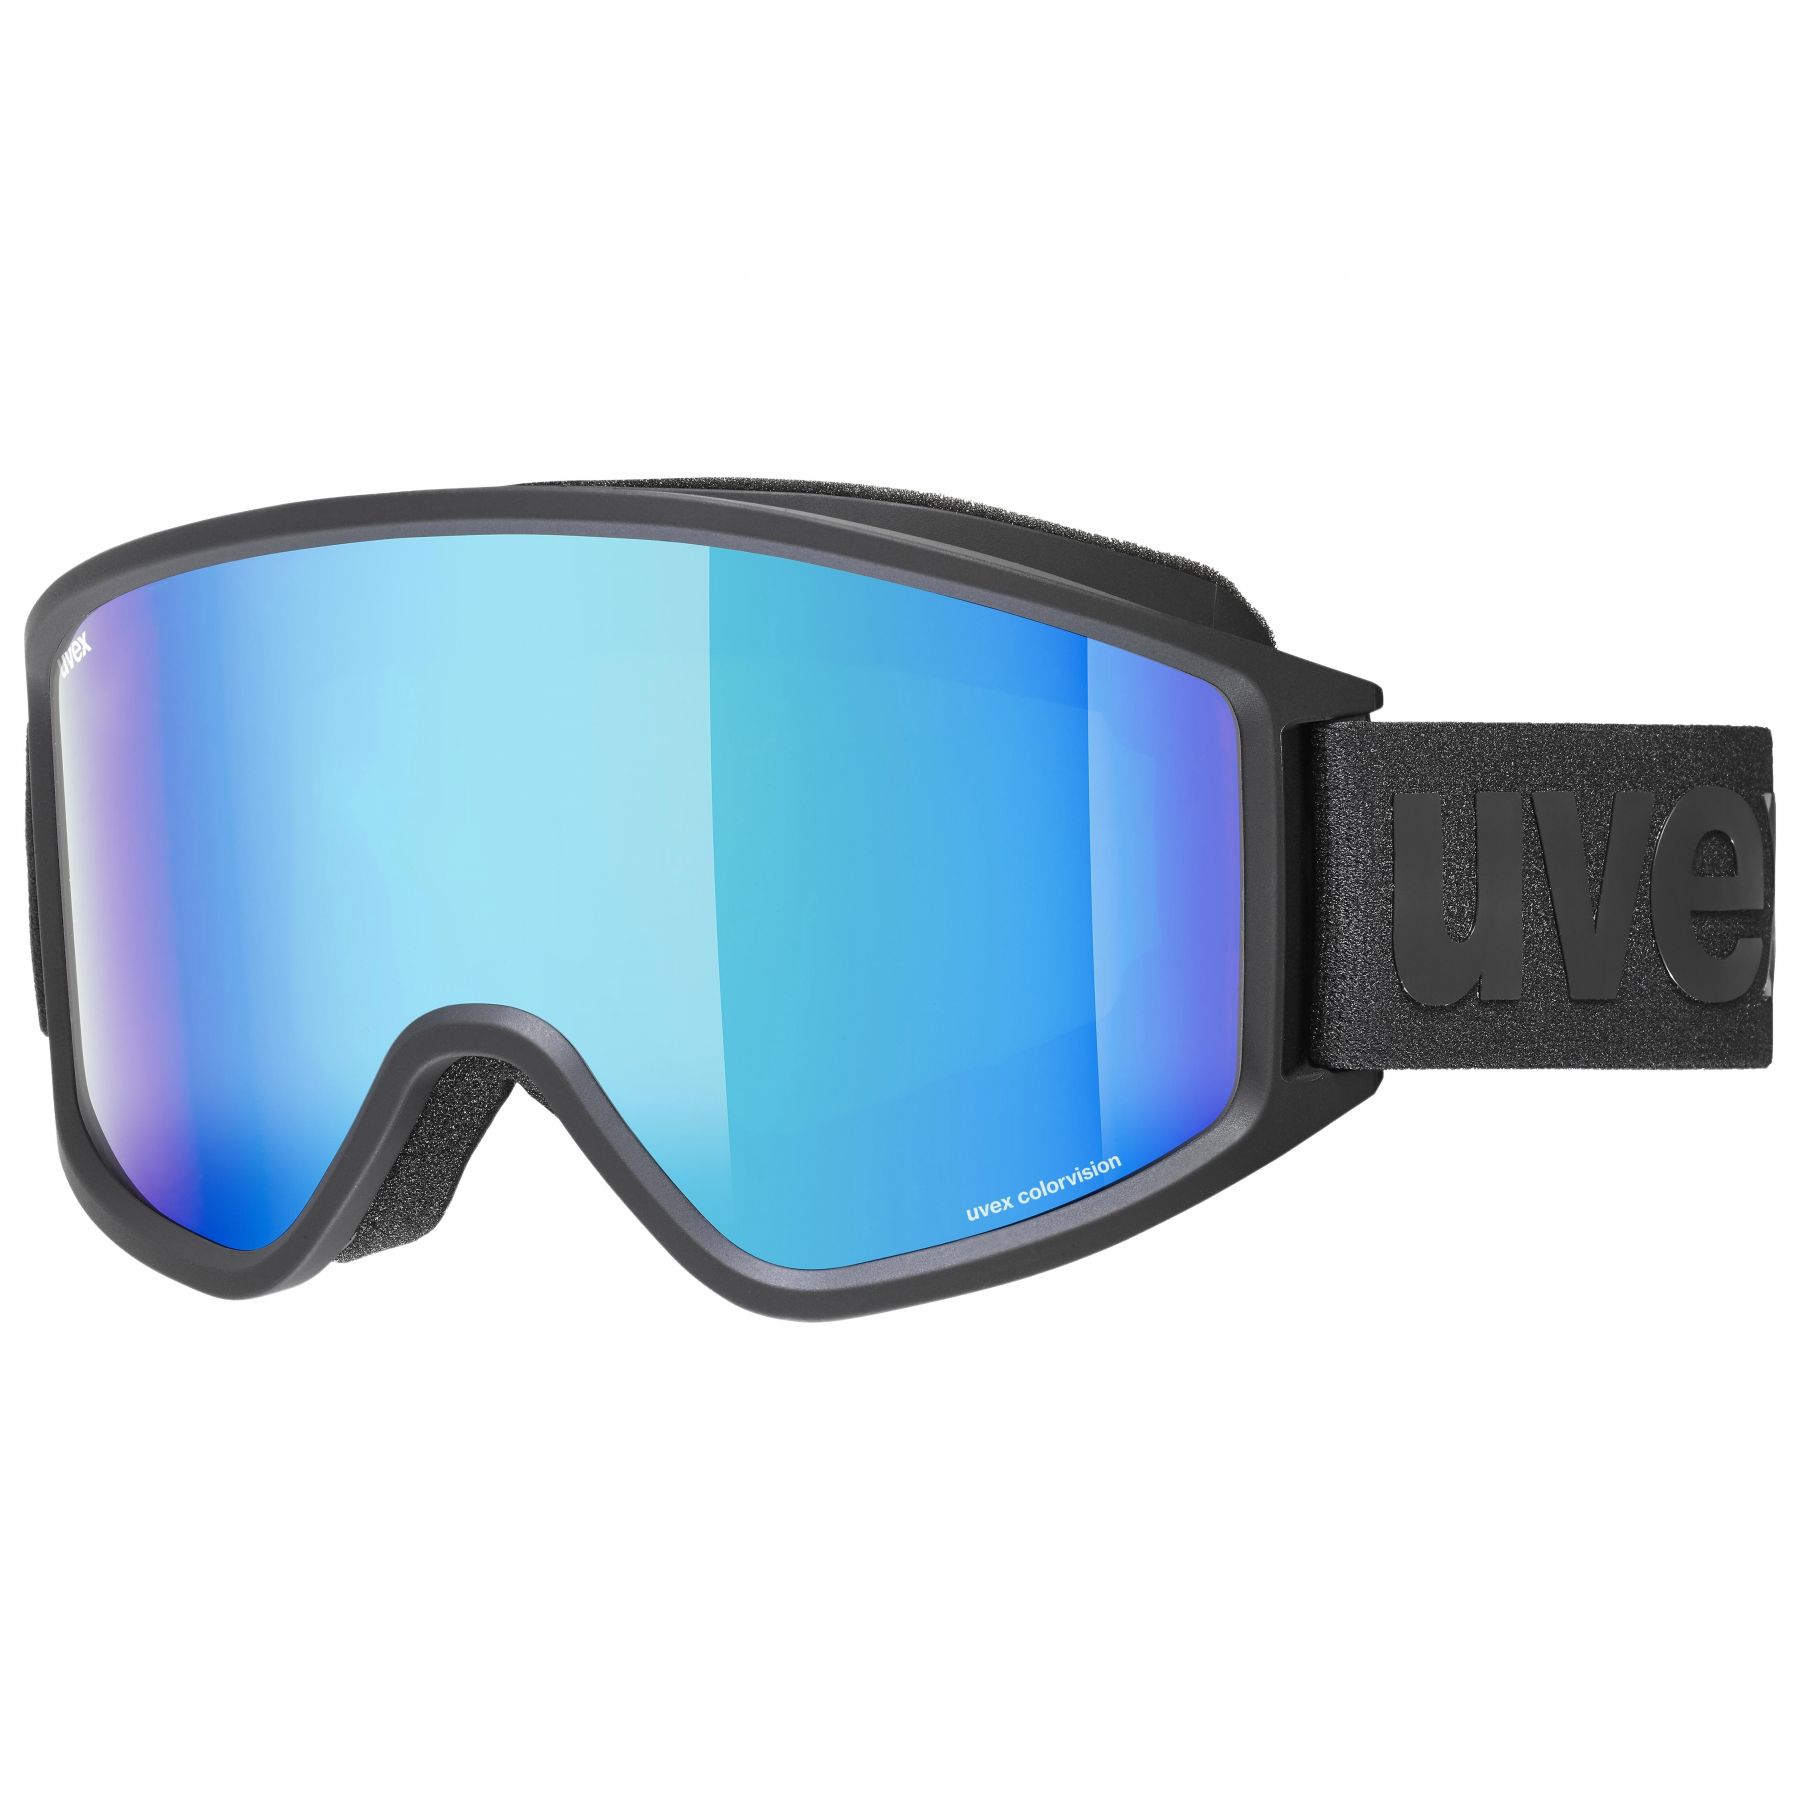 Billede af Uvex g.gl. 3000 CV, skibriller, sort hos Skisport.dk